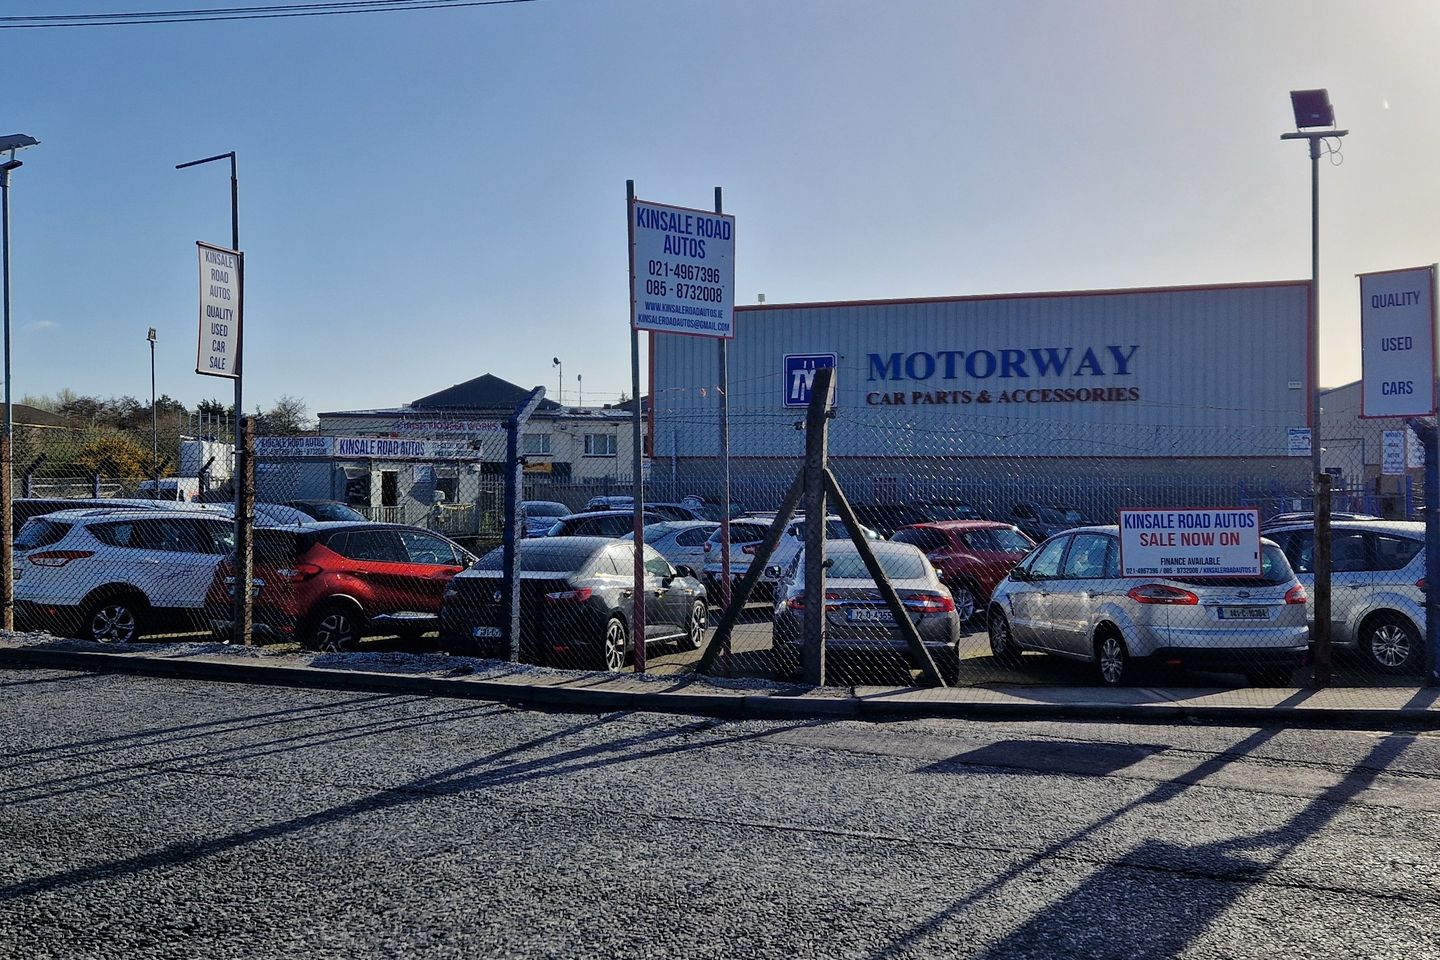 10,000 sq.ft Sales Forecourt Compound at Kinsale Road Business Park, Kinsale Road, Cork City Centre